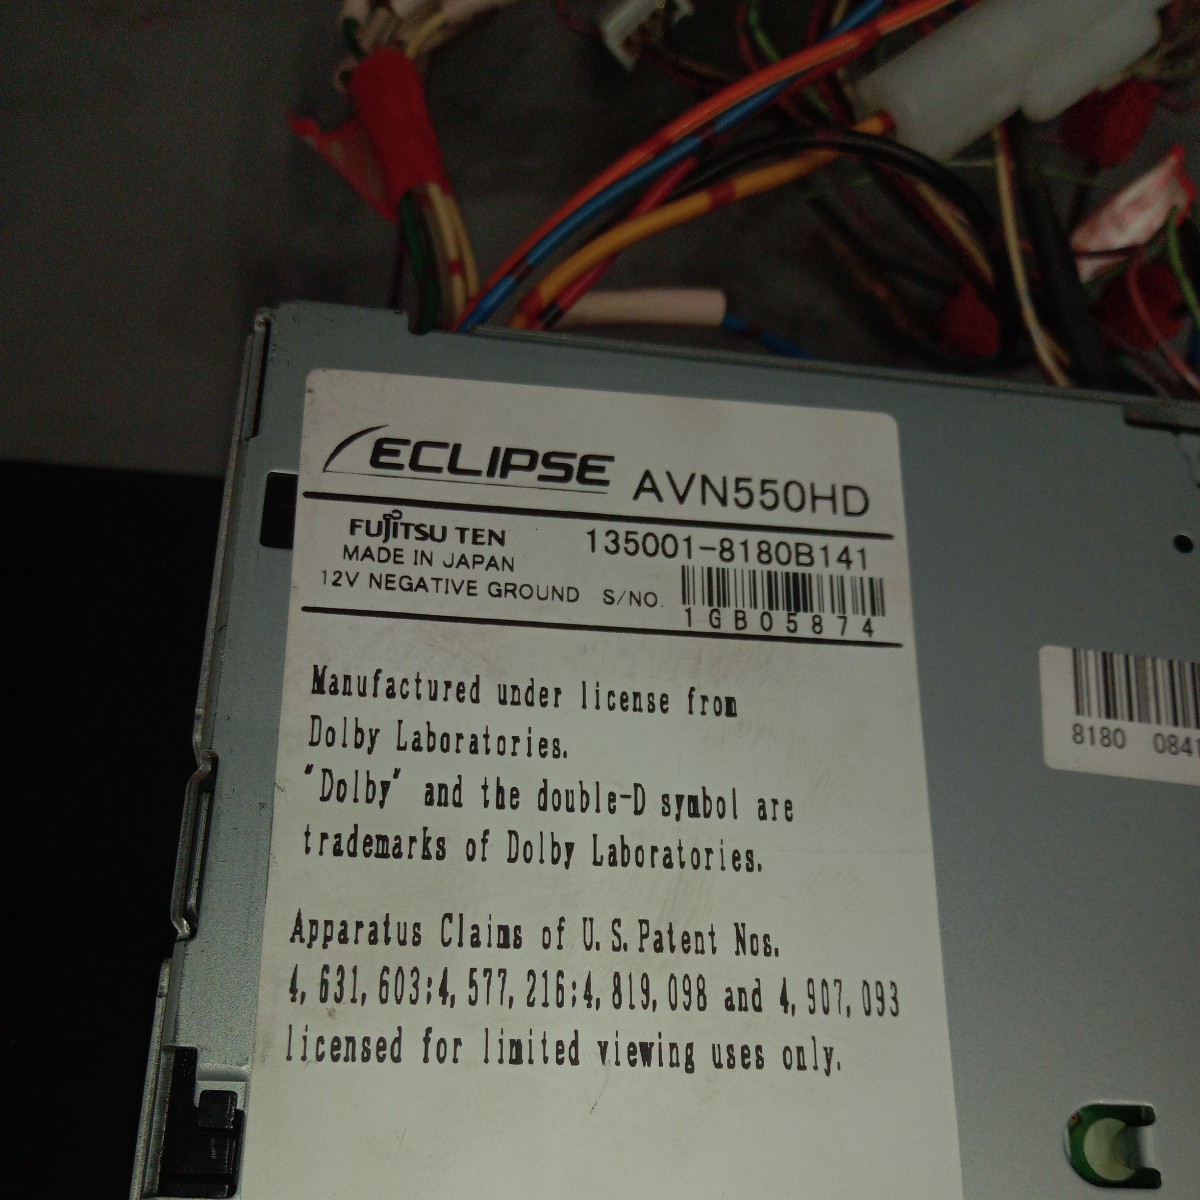  Eclipse ECLIPSE AVN550HD 135001-8180B141 работоспособность не проверялась Junk 